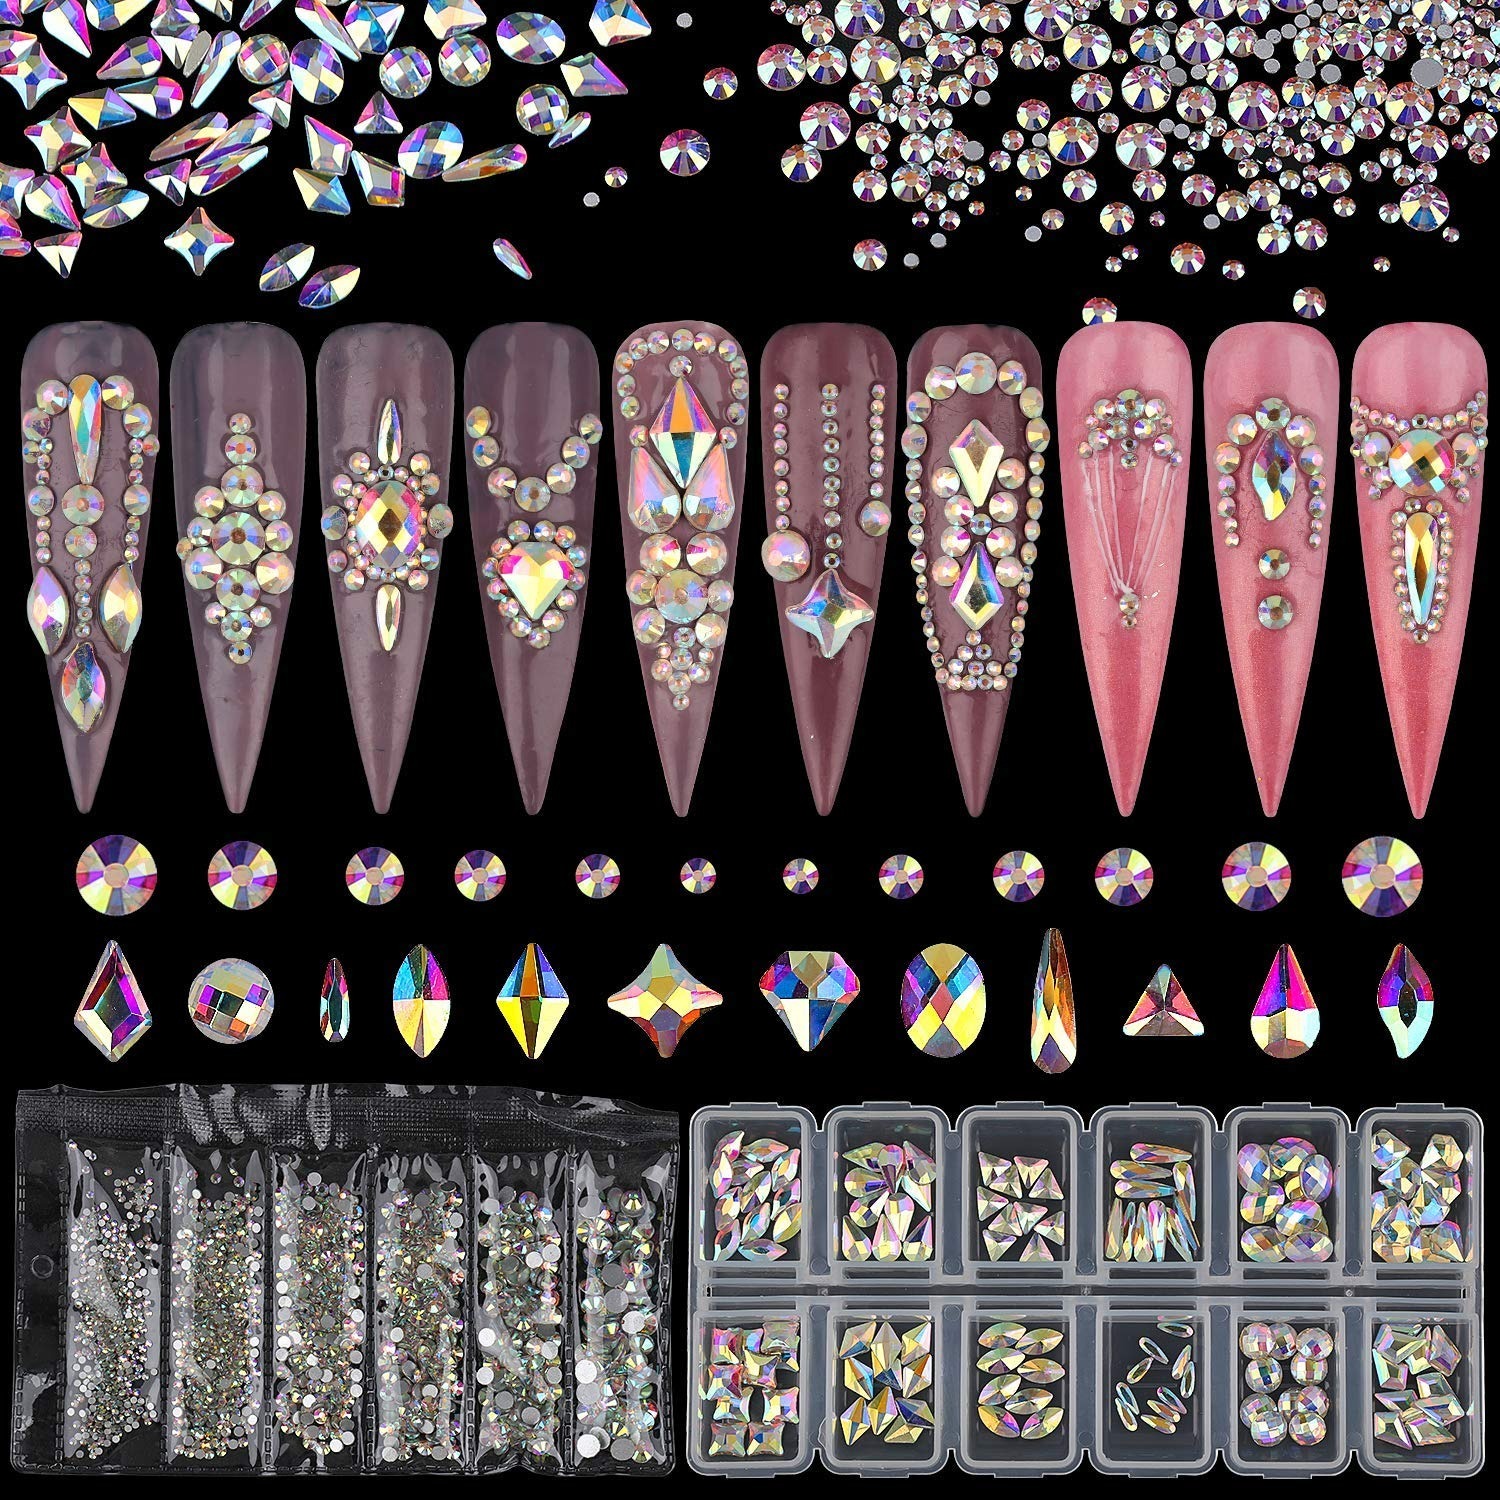 1920Pcs Silver Rhinestones Crystals for Nail Art, Silver Flatback  Rhinestones Gems Glass Stones Multi Sizes Shapes Nail Rhinestones for Nail  DIY